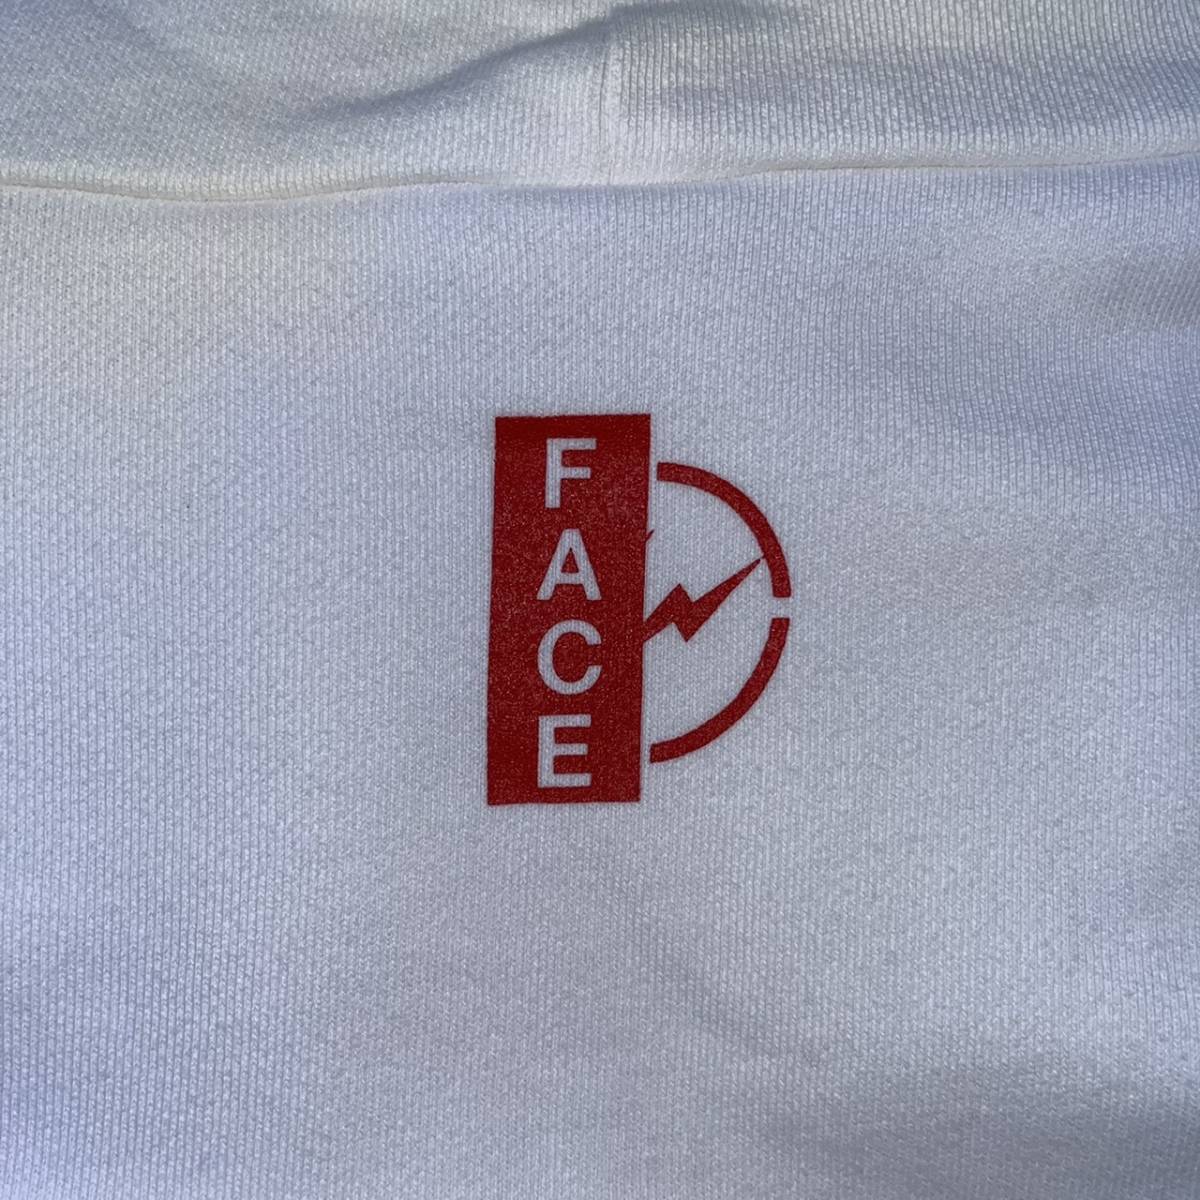 新品 FACETASM ファセッタズム × THE CONVENI ザコンビニ Lサイズ ロゴ パーカー フーディ ホワイト